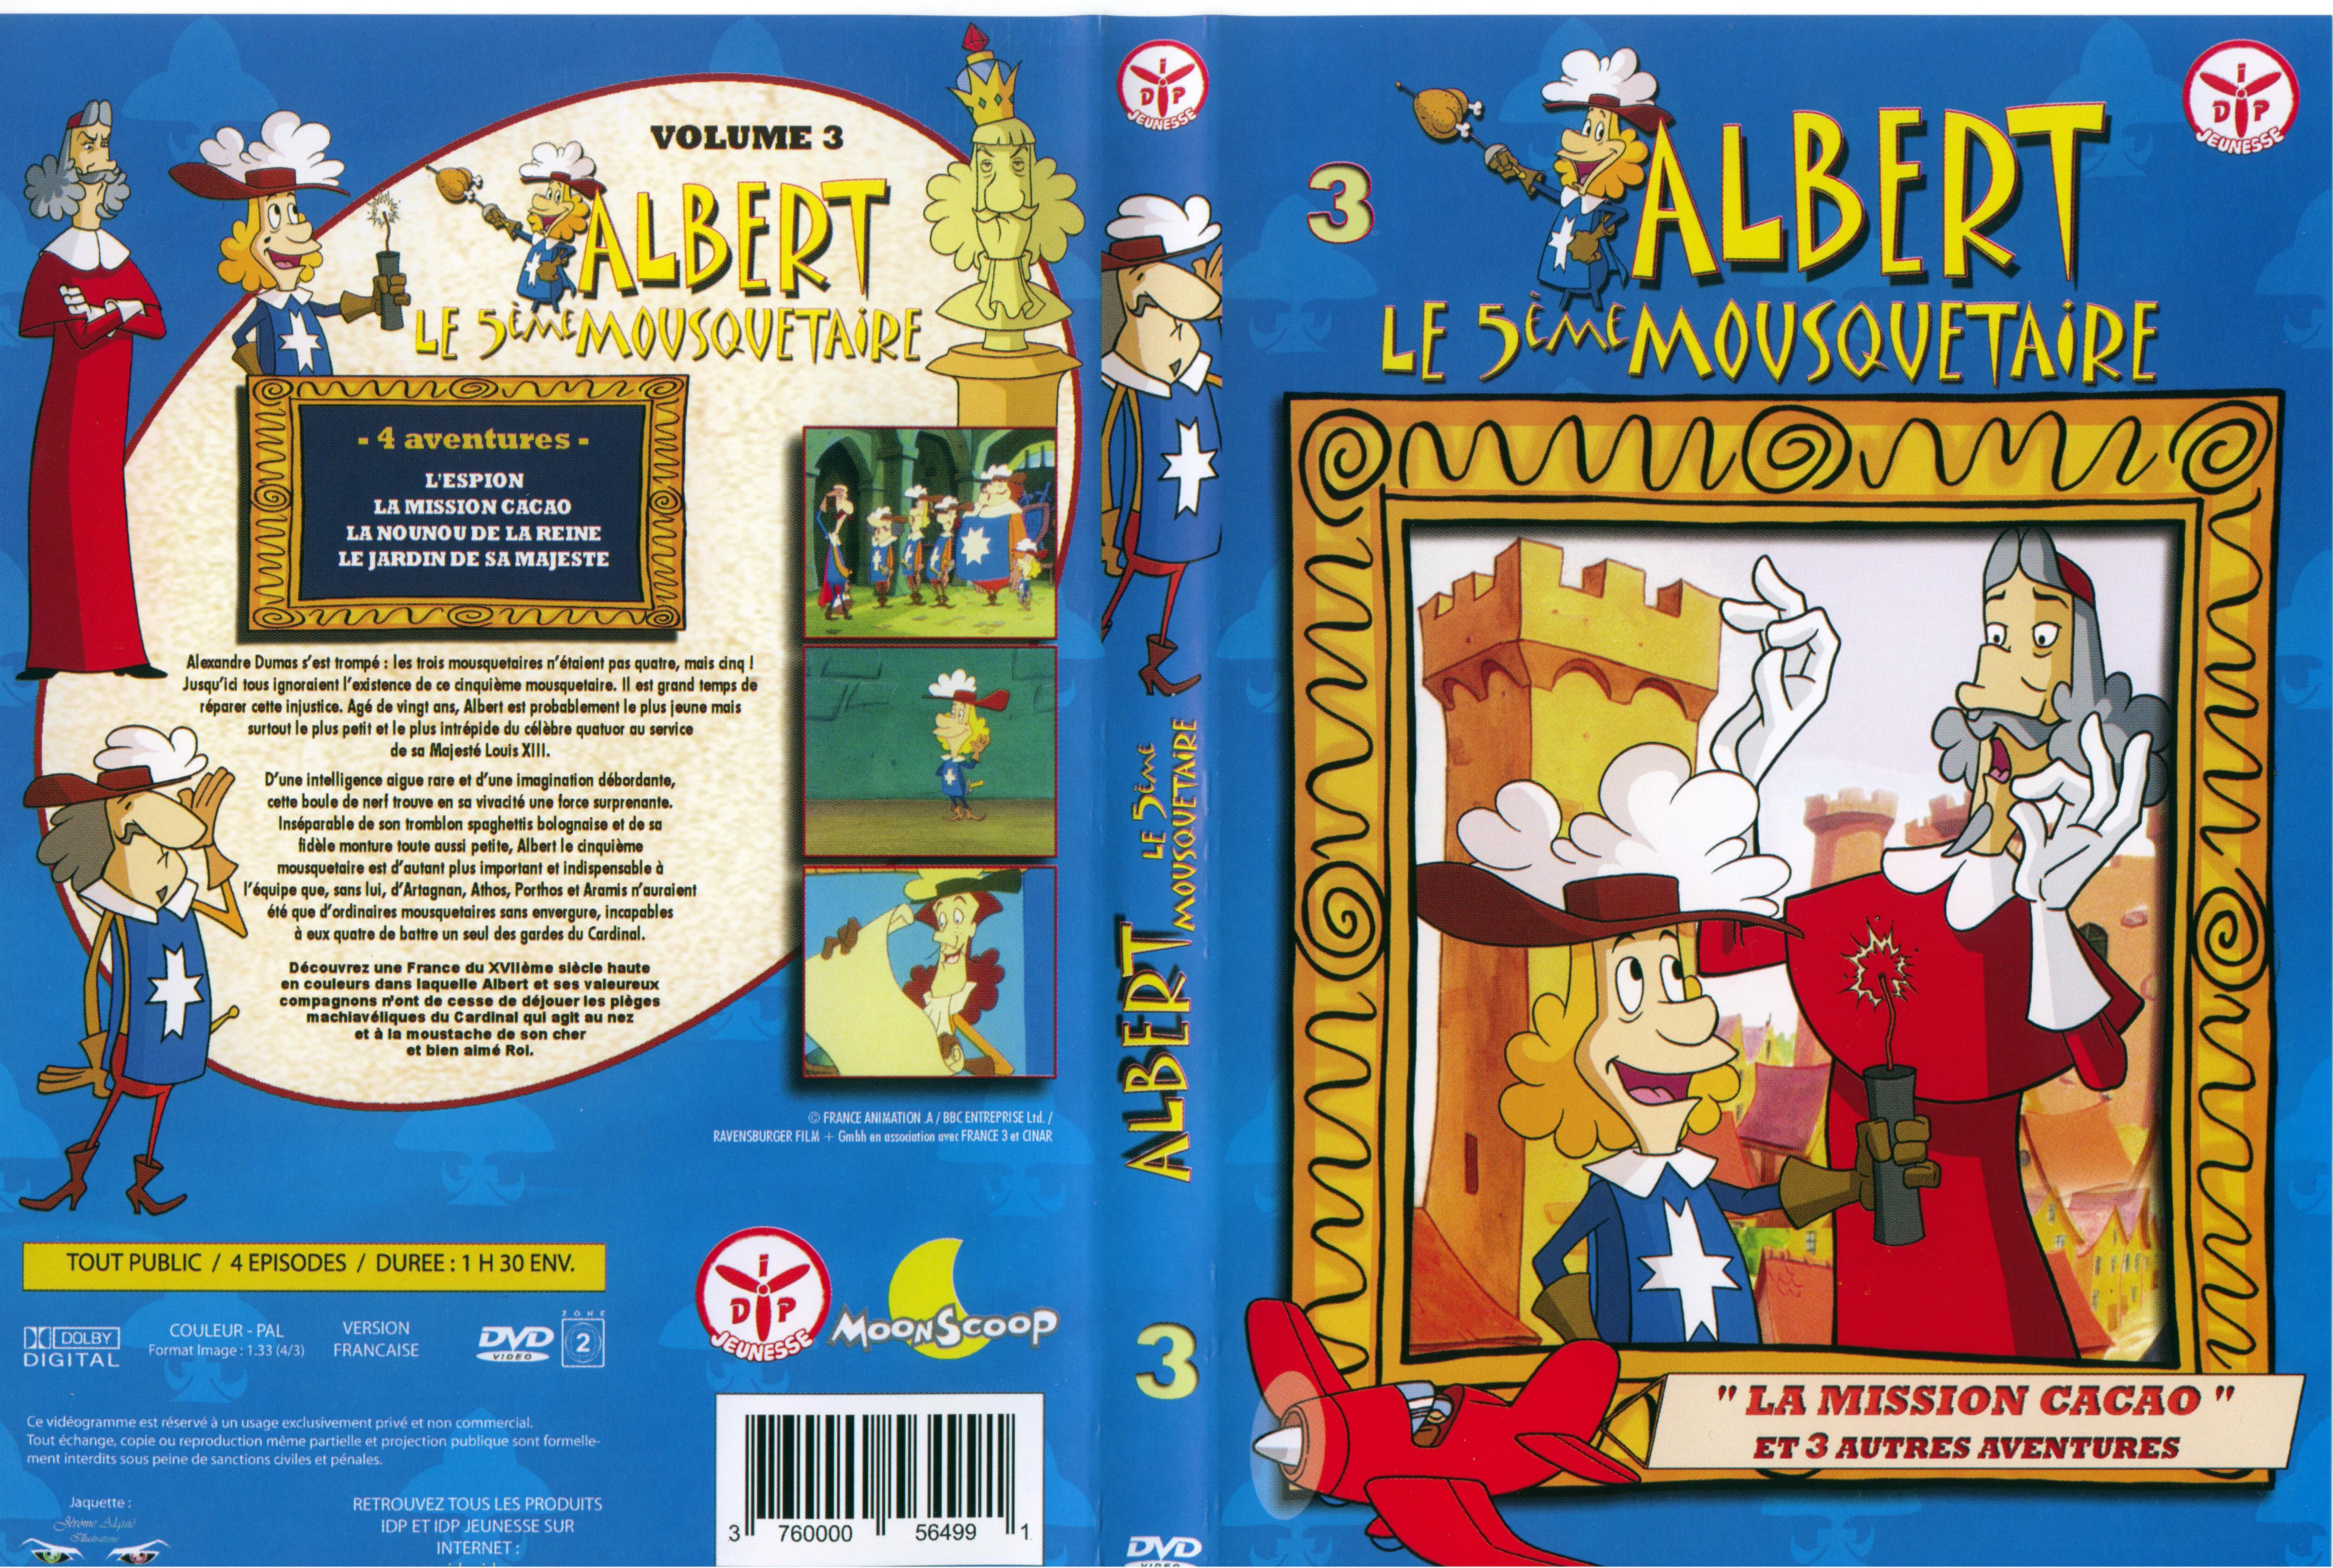 Jaquette DVD Albert le 5 me mousquetaire vol 3